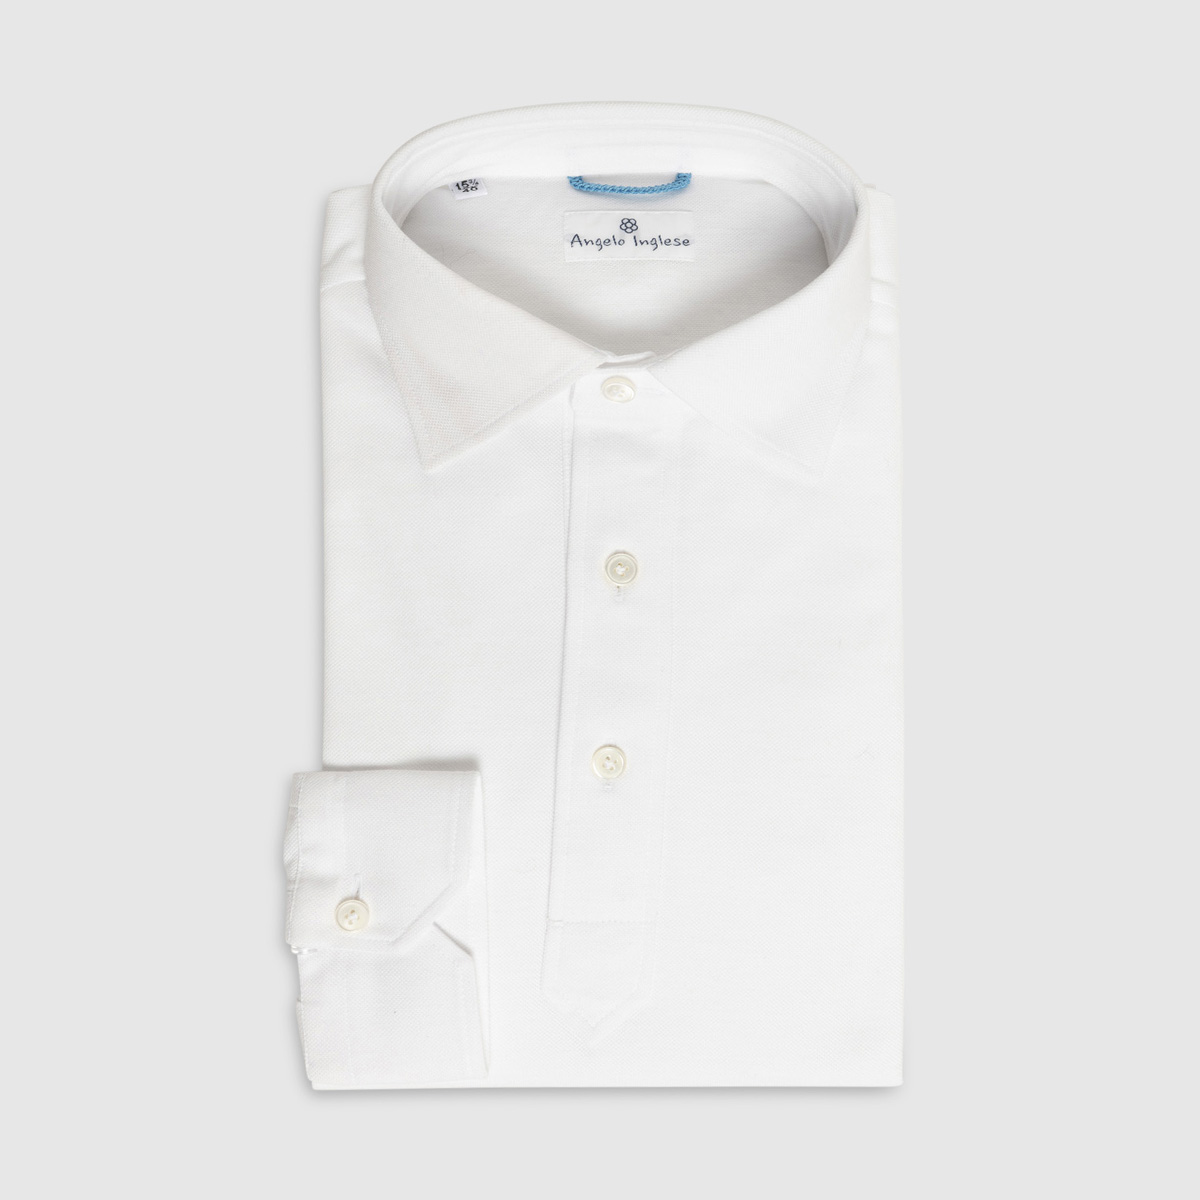 JFK Polo Shirt in White Piquet Cotton G. Inglese on sale 2022